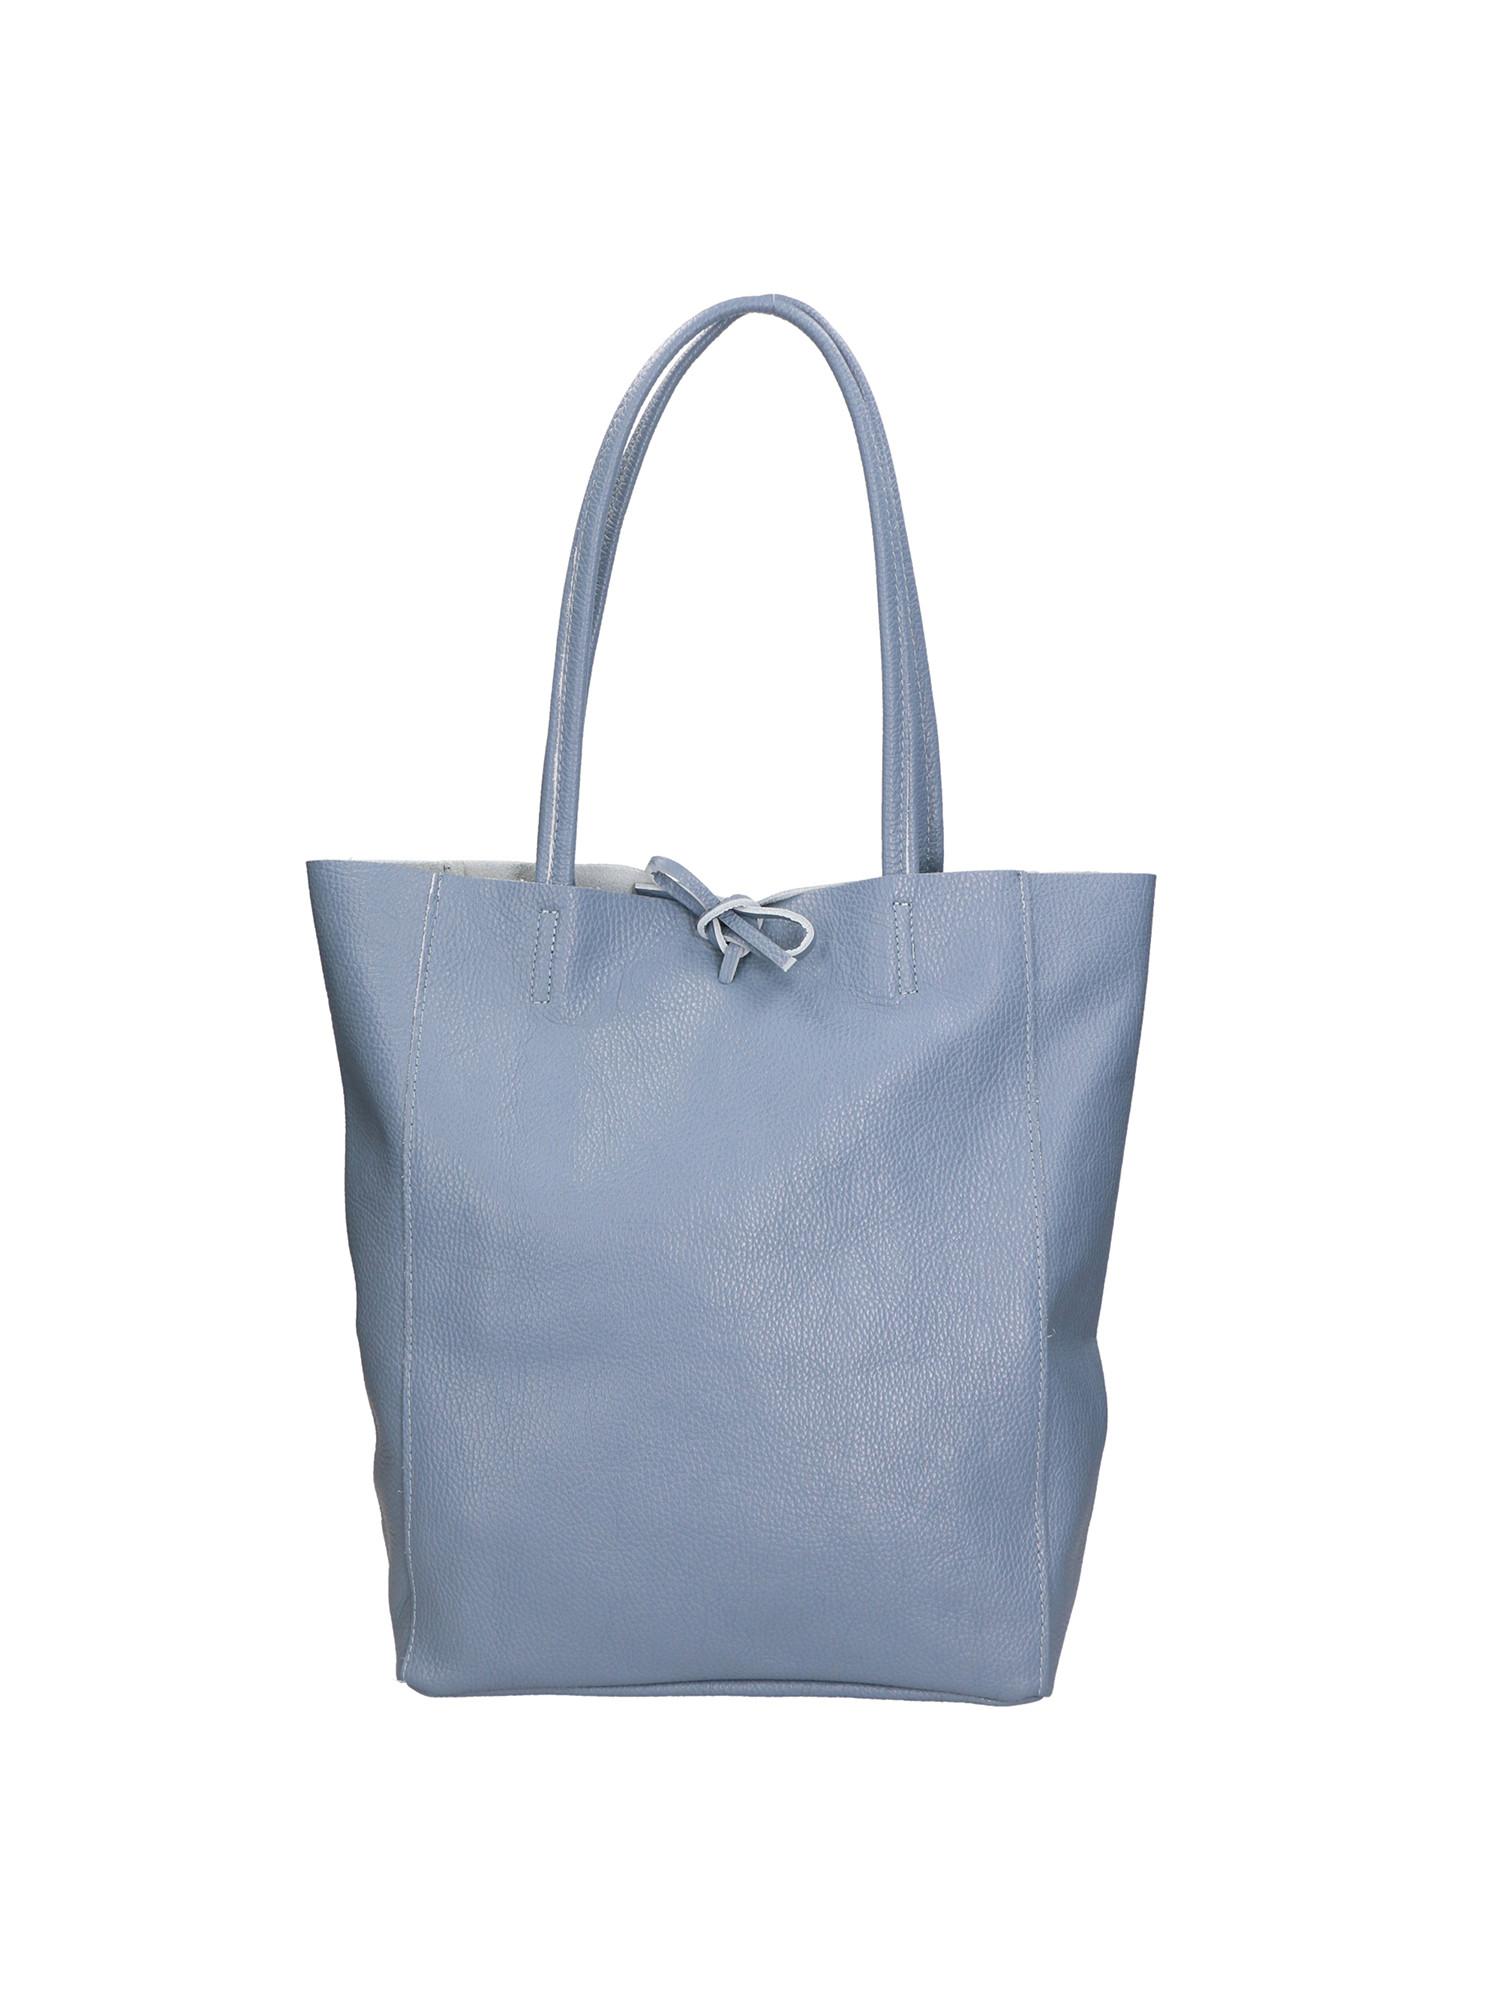 Handtasche Damen Himmelblau ONE SIZE von Gave Lux